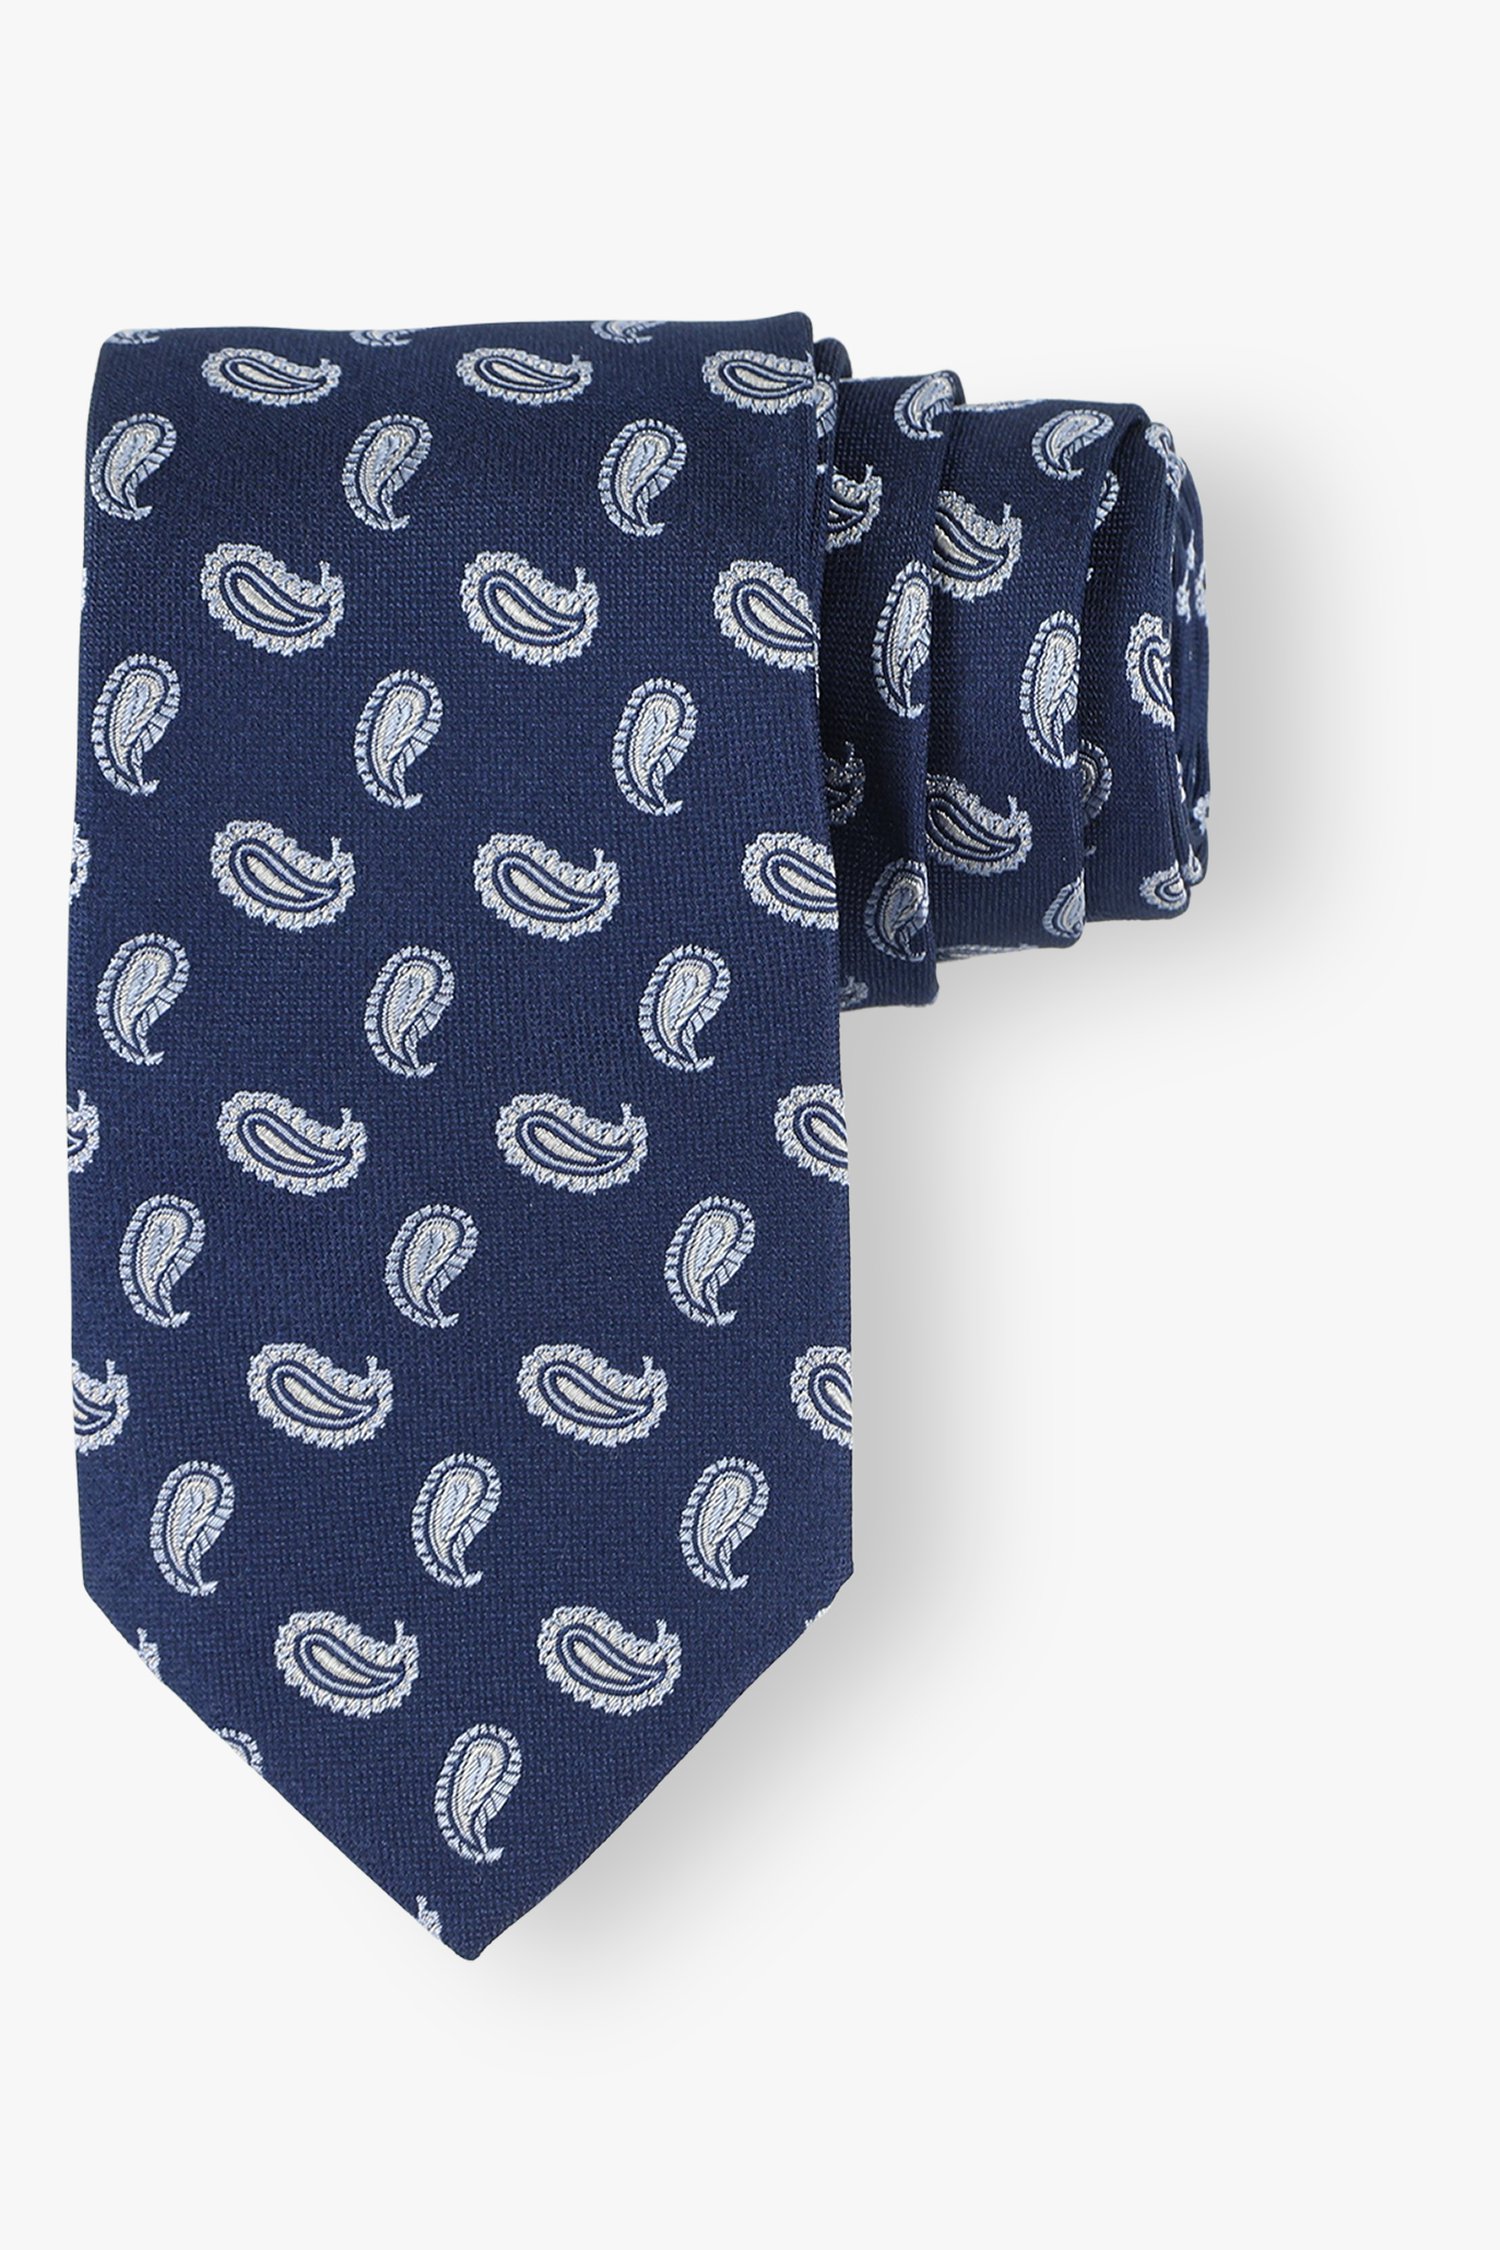 Cravate bleu marine avec imprimé bleu clair de Michaelis pour Hommes